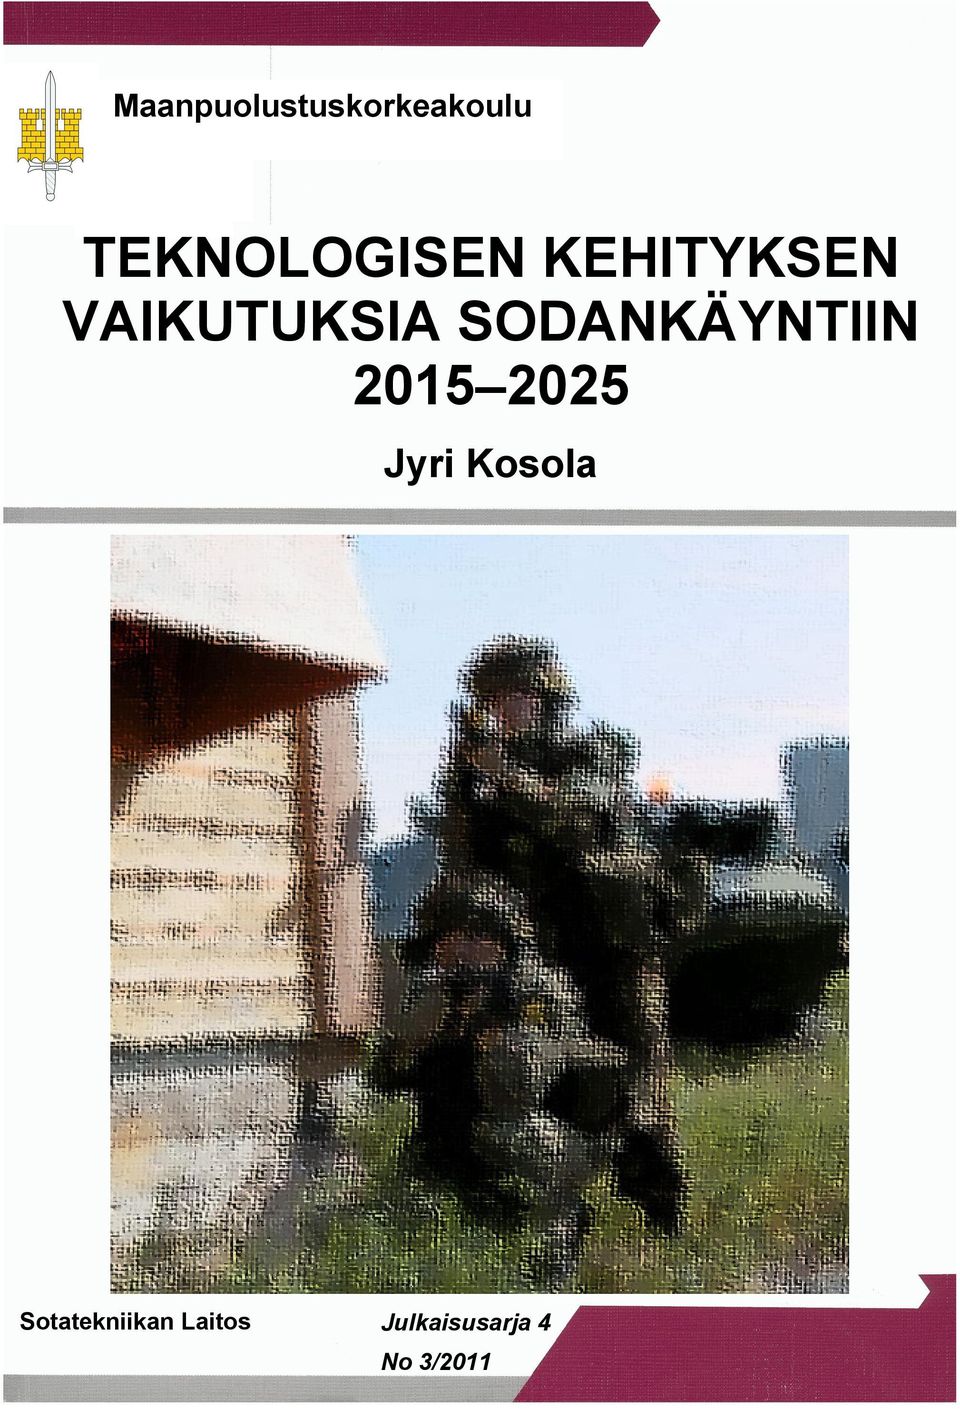 SODANKÄYNTIIN 2015 2025 Jyri Kosola